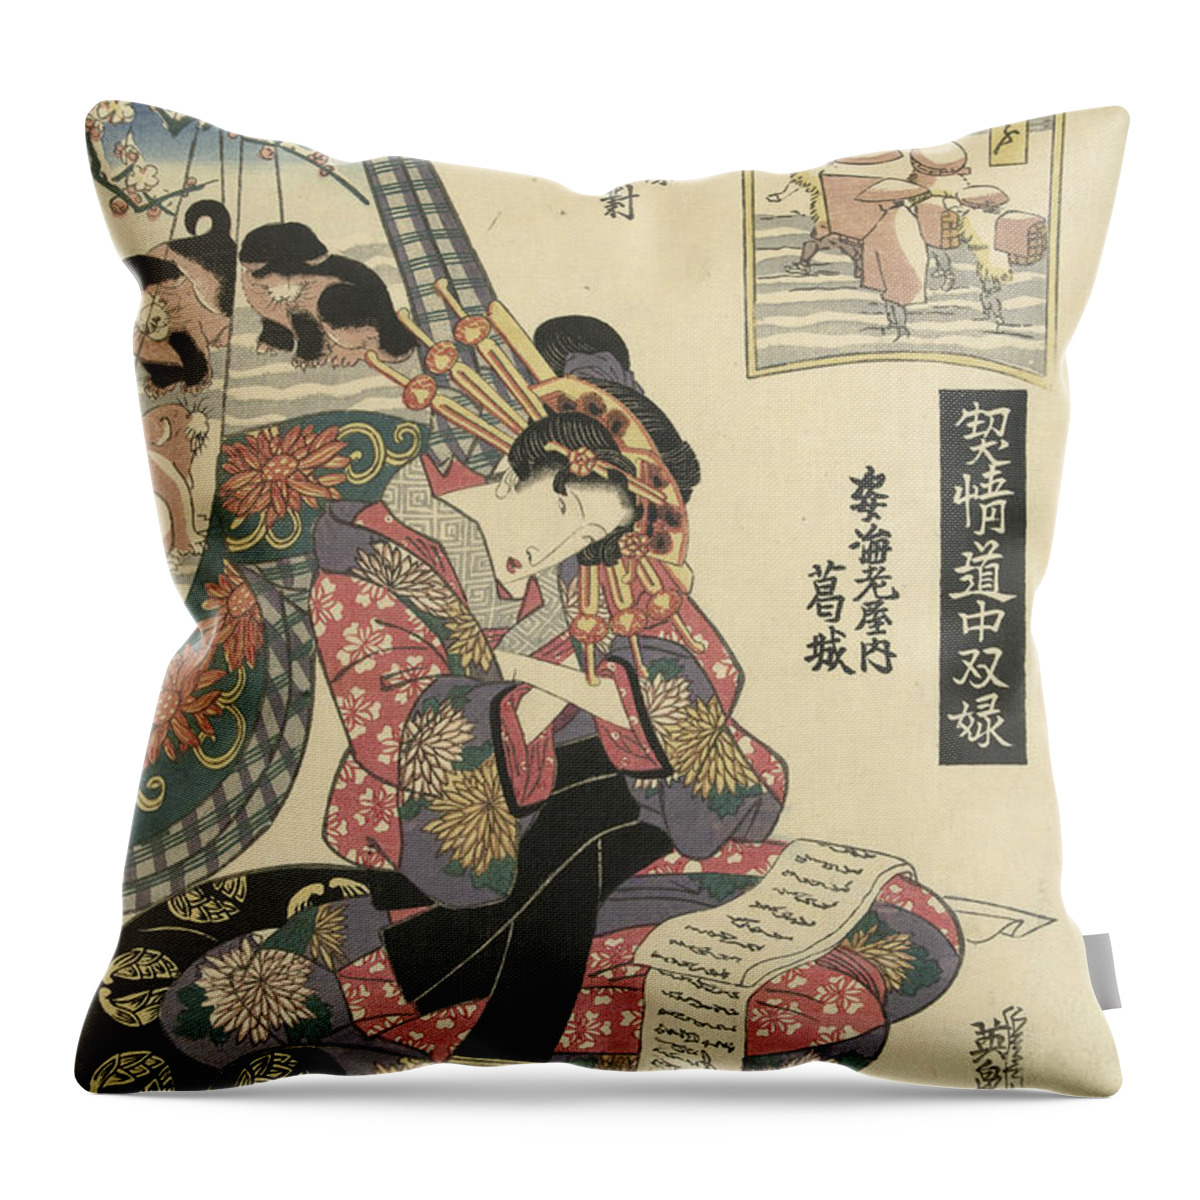 19th Century Art Throw Pillow featuring the relief Courtesan Katsuragi from the Sugata Ebiya House by Keisai Eisen